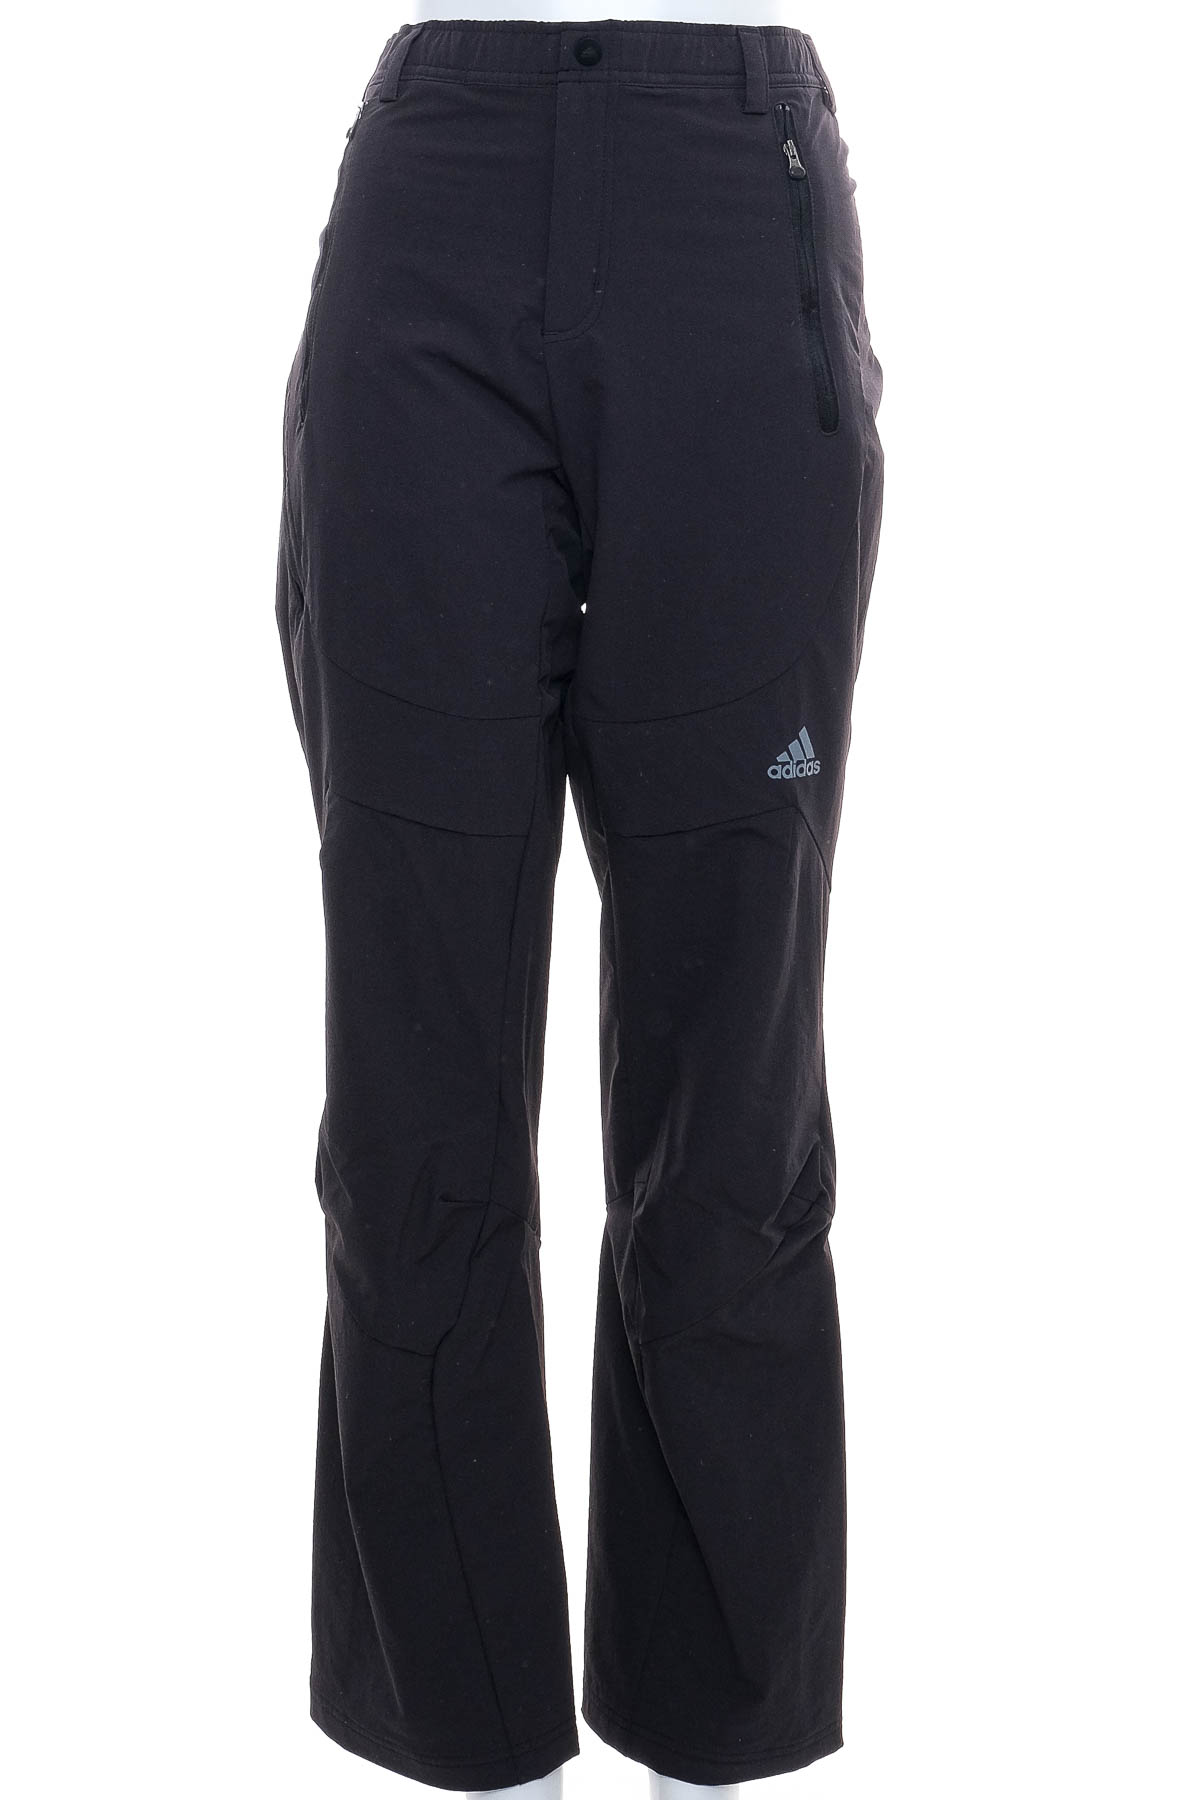 Γυναικεία αθλητικά παντελόνια - Adidas - 0